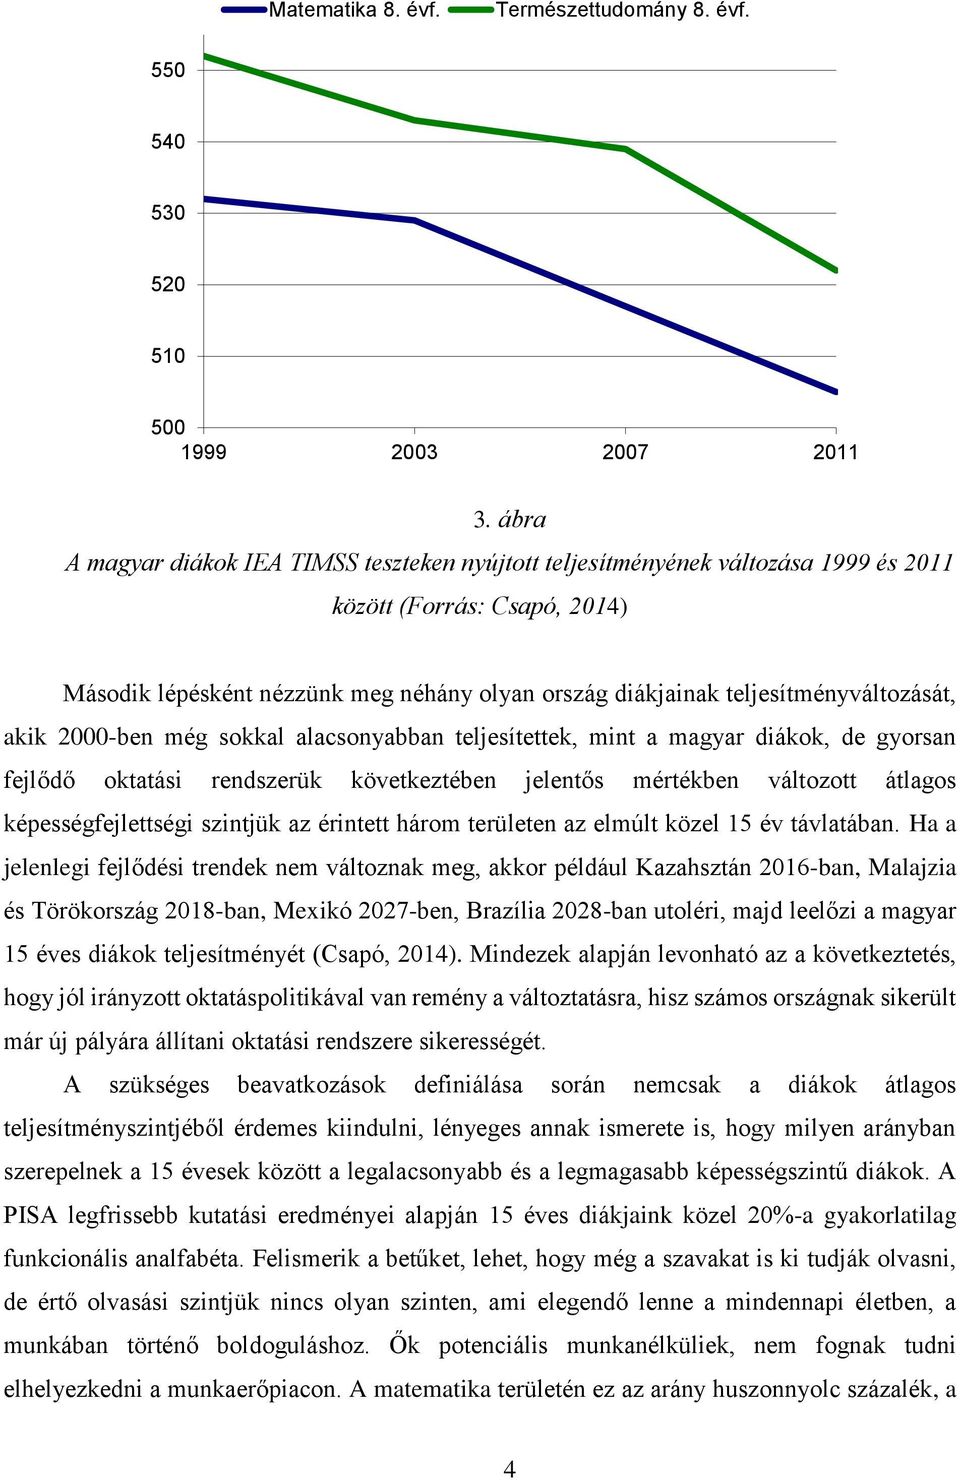 teljesítményváltozását, akik 2000-ben még sokkal alacsonyabban teljesítettek, mint a magyar diákok, de gyorsan fejlődő oktatási rendszerük következtében jelentős mértékben változott átlagos